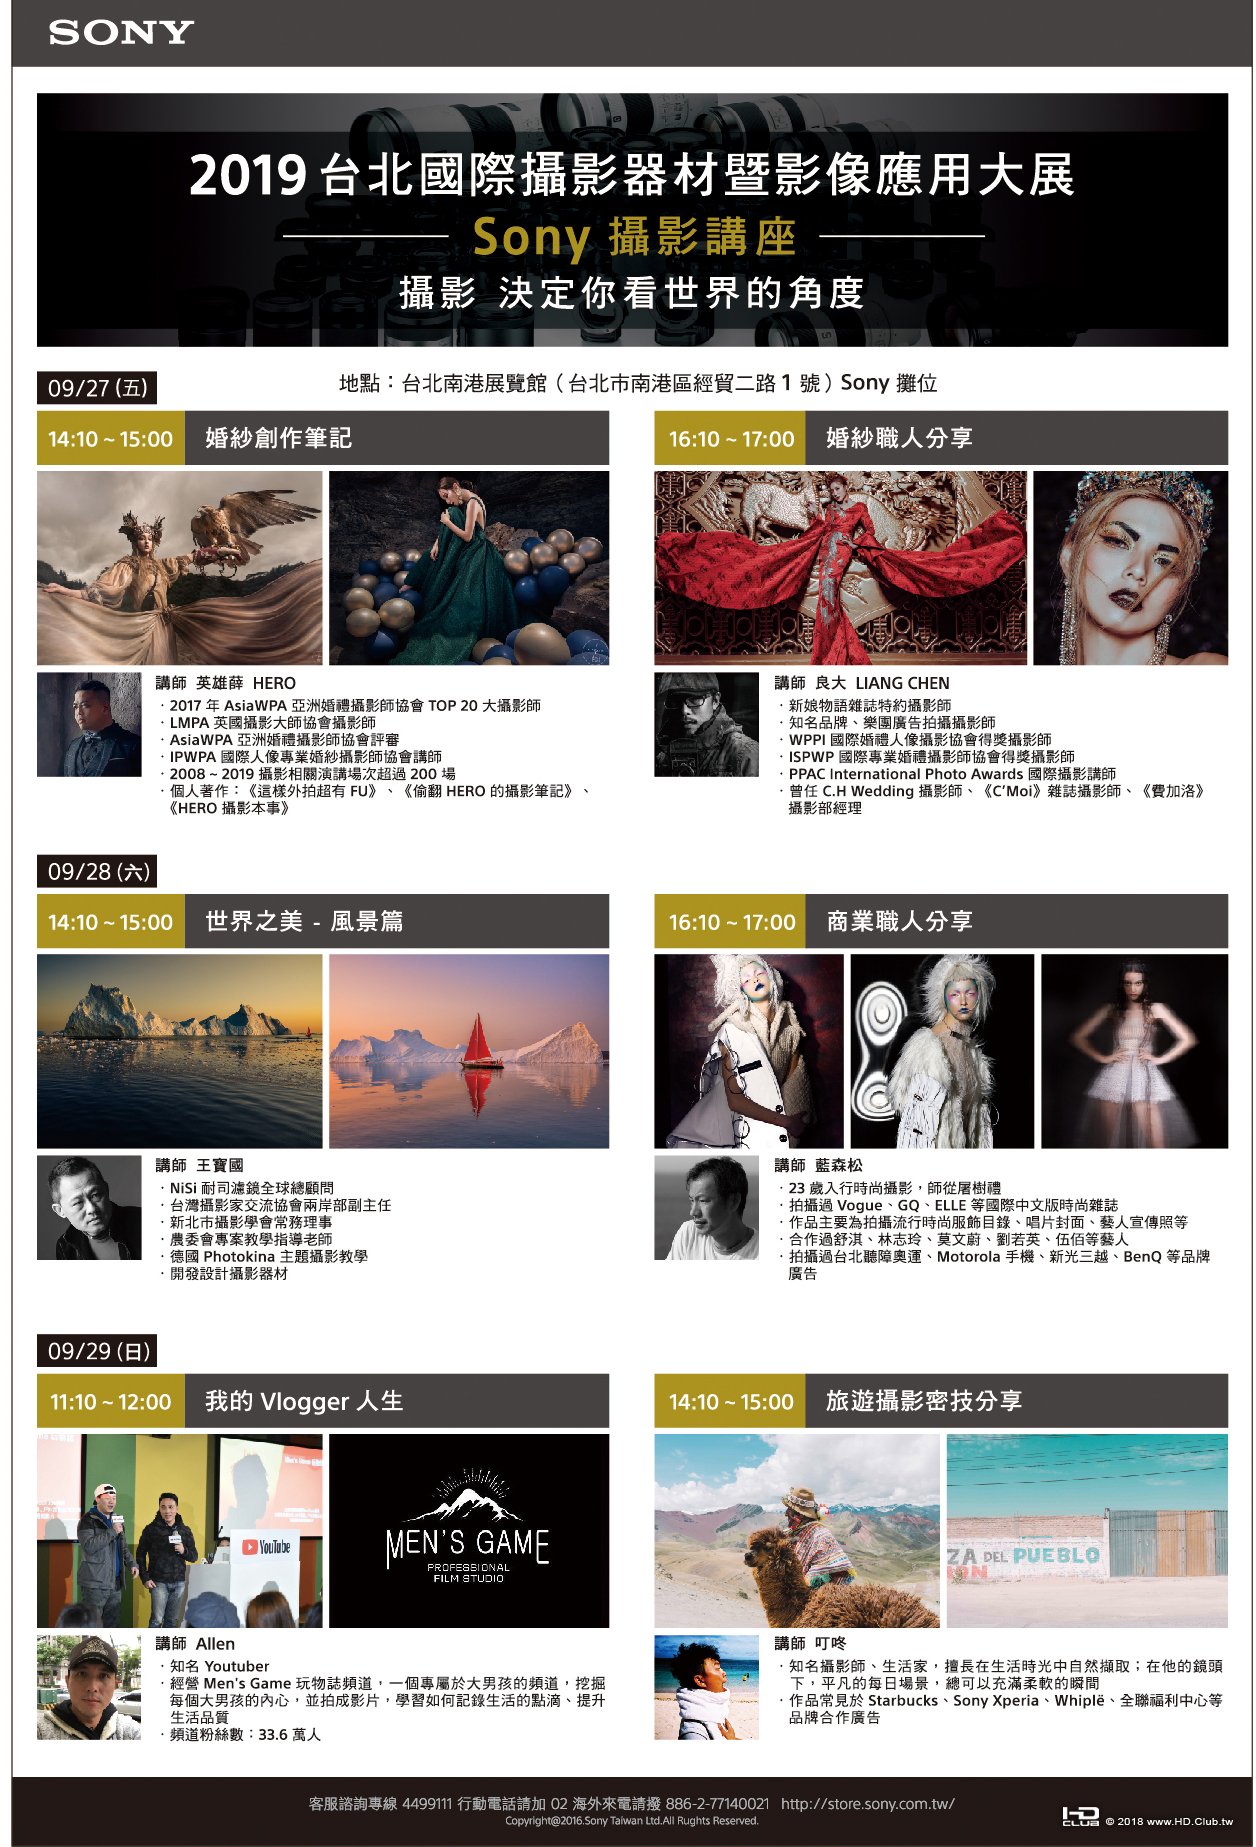 圖3) 2019 攝影器材展 Sony Taiwan 舉辦多元豐富主題攝影講座，邀請知名攝影師與消費.jpg